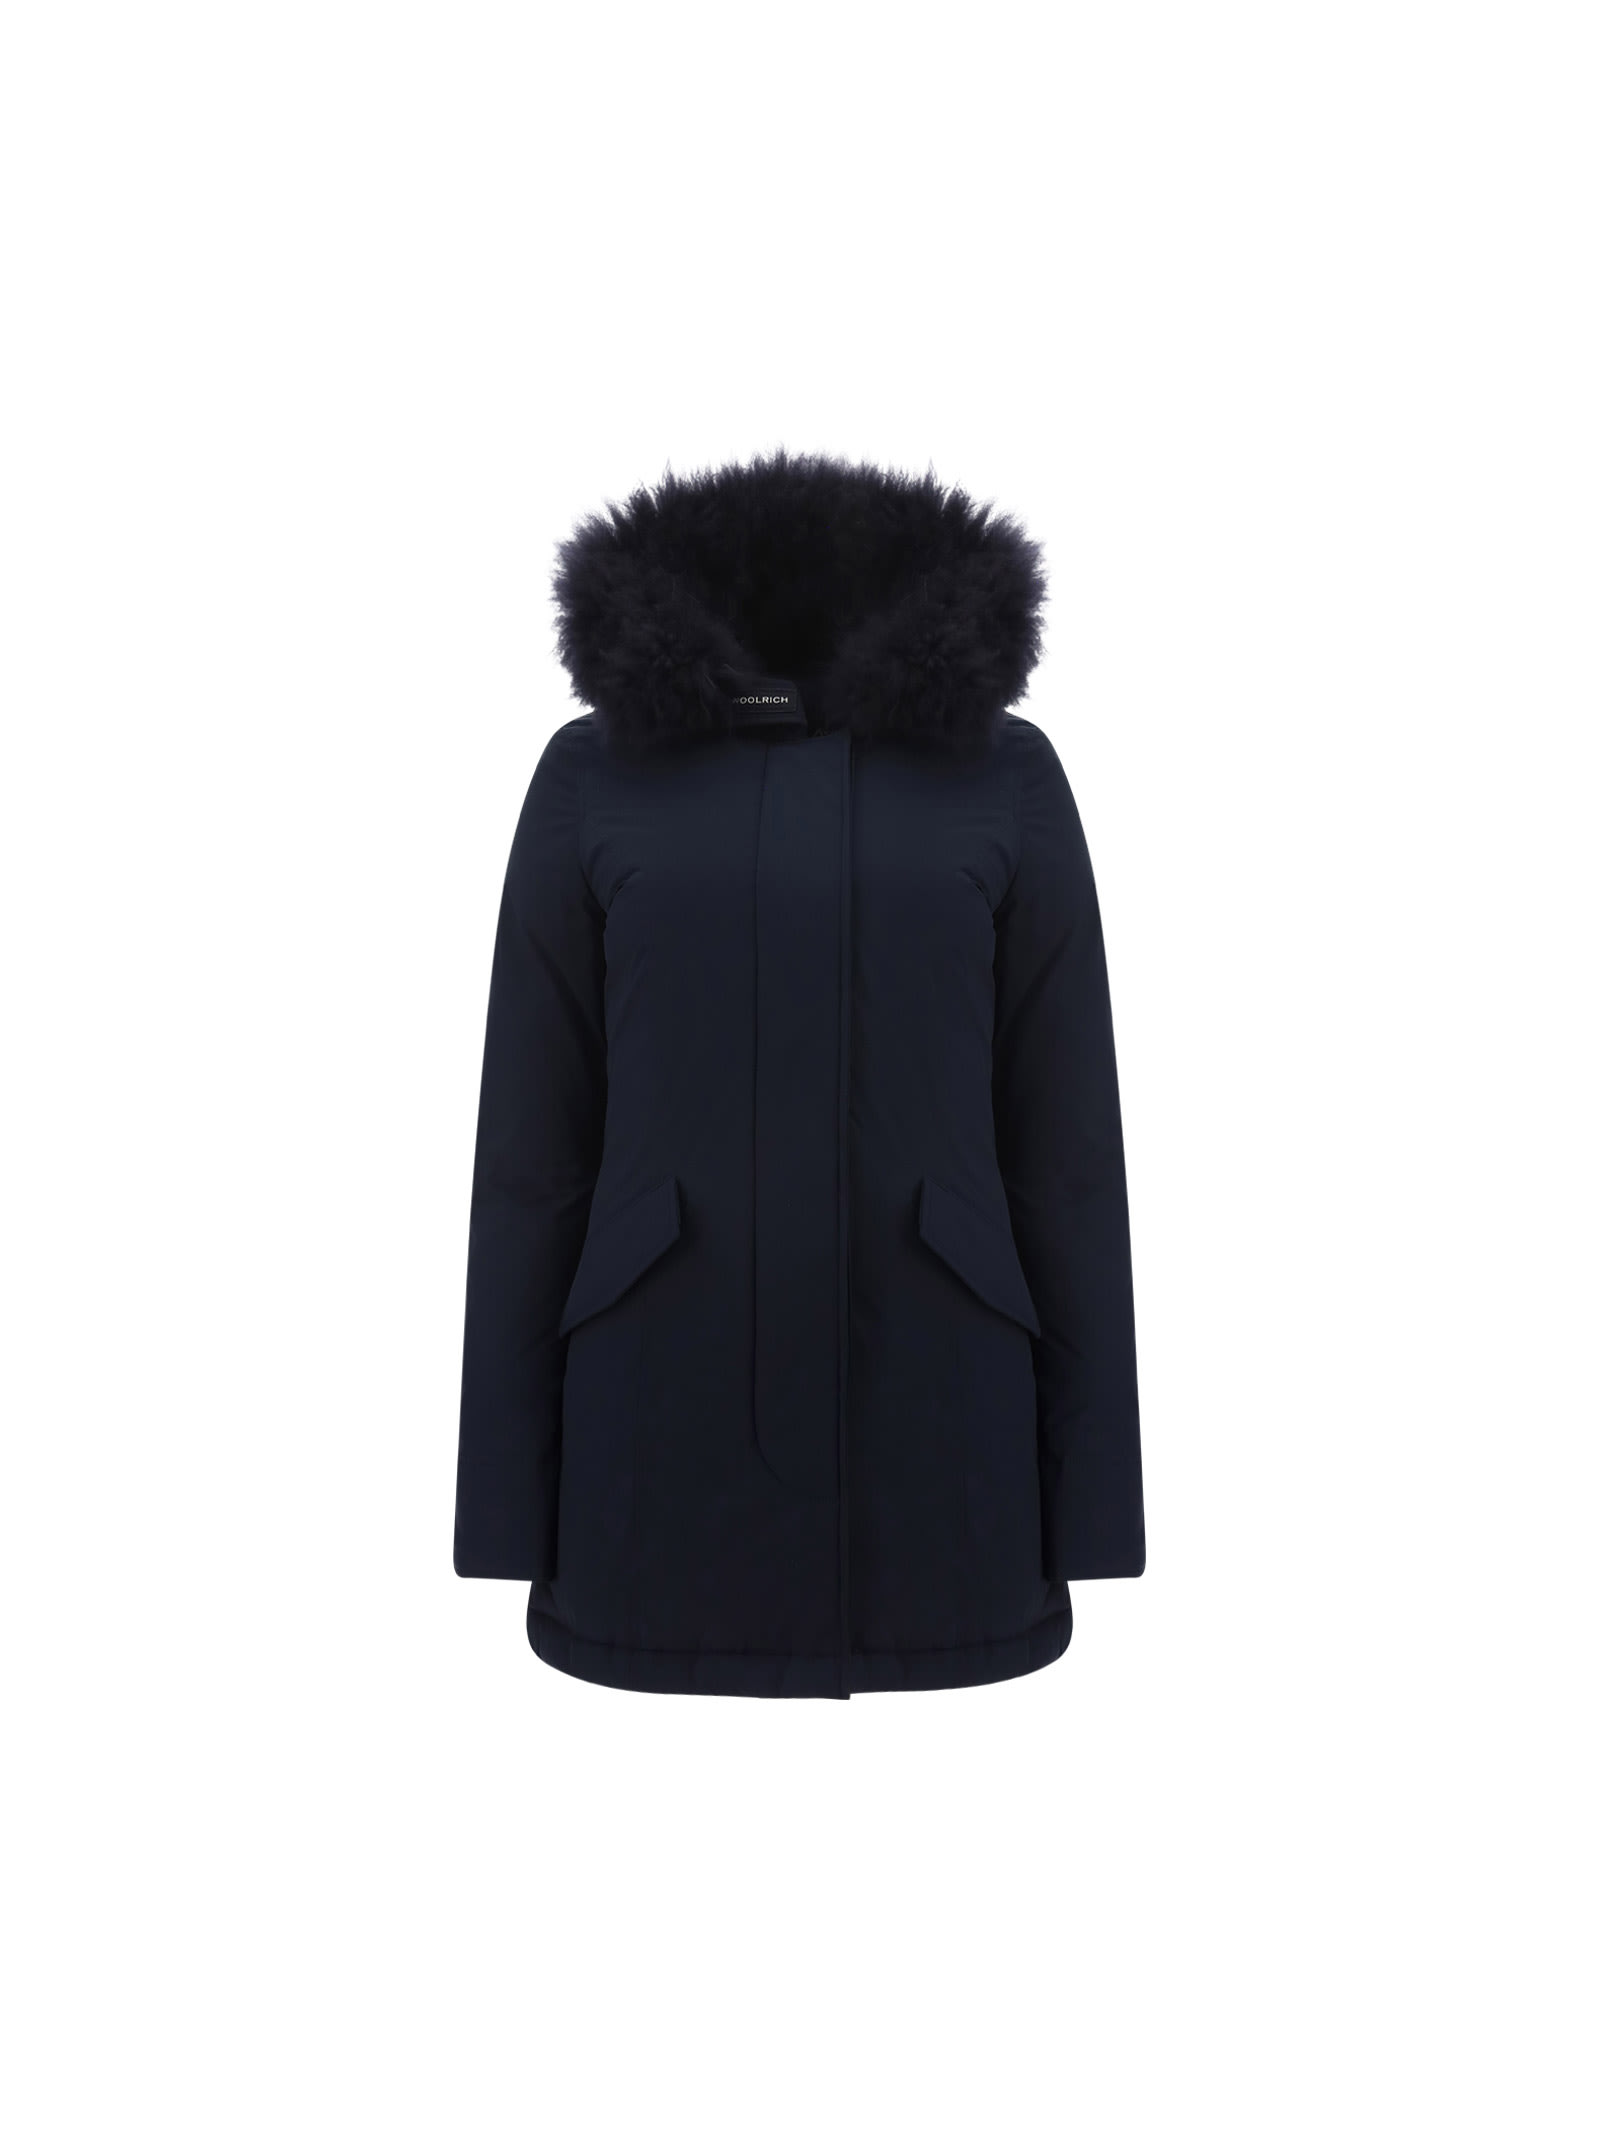 Woolrich Woolen Mills Luxury Arctic Coat